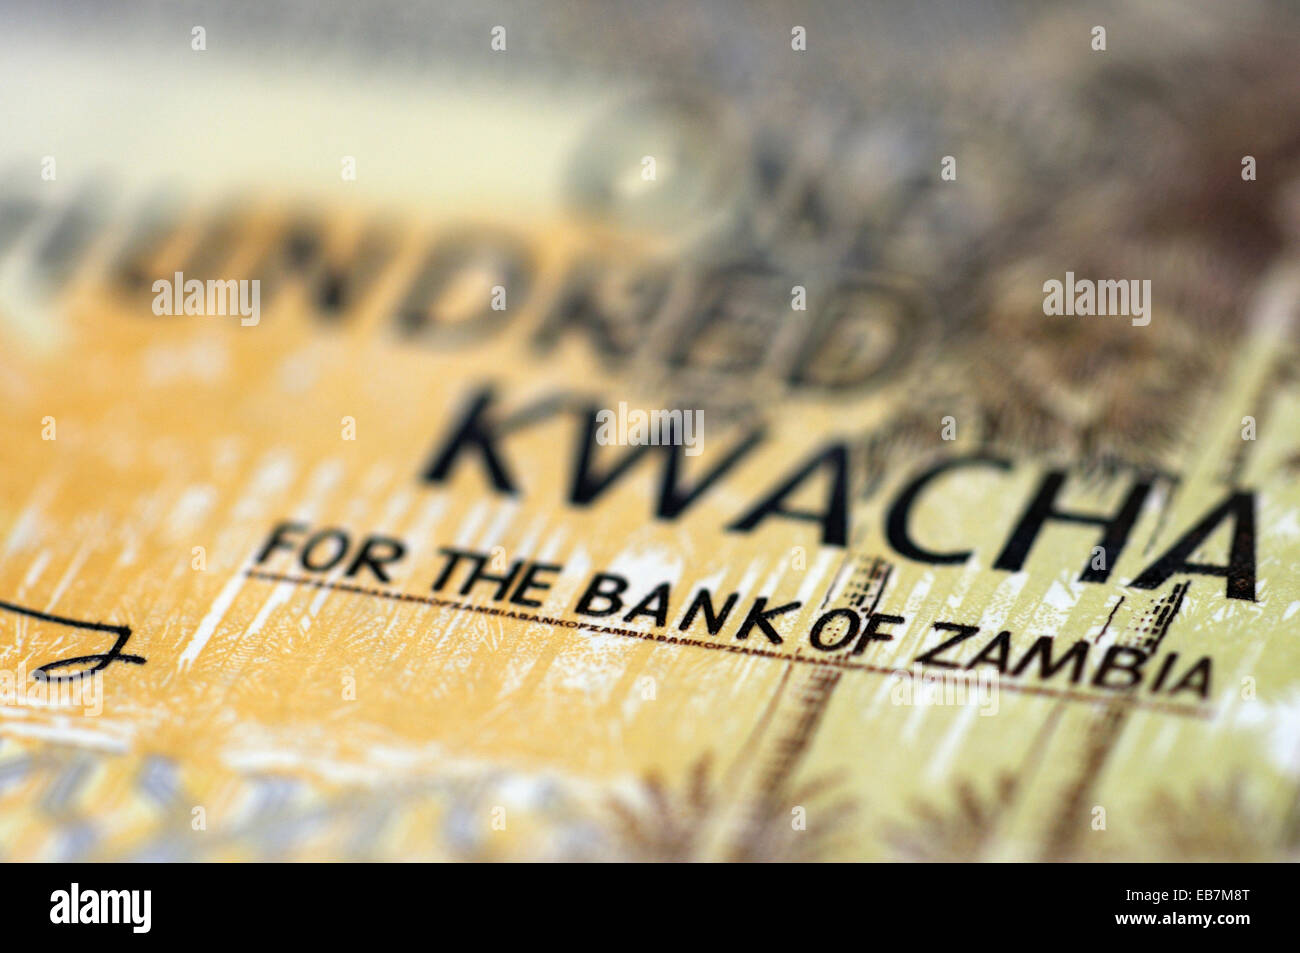 Detalle de una muestra de billetes de Zambia el Banco de Zambia Foto de stock